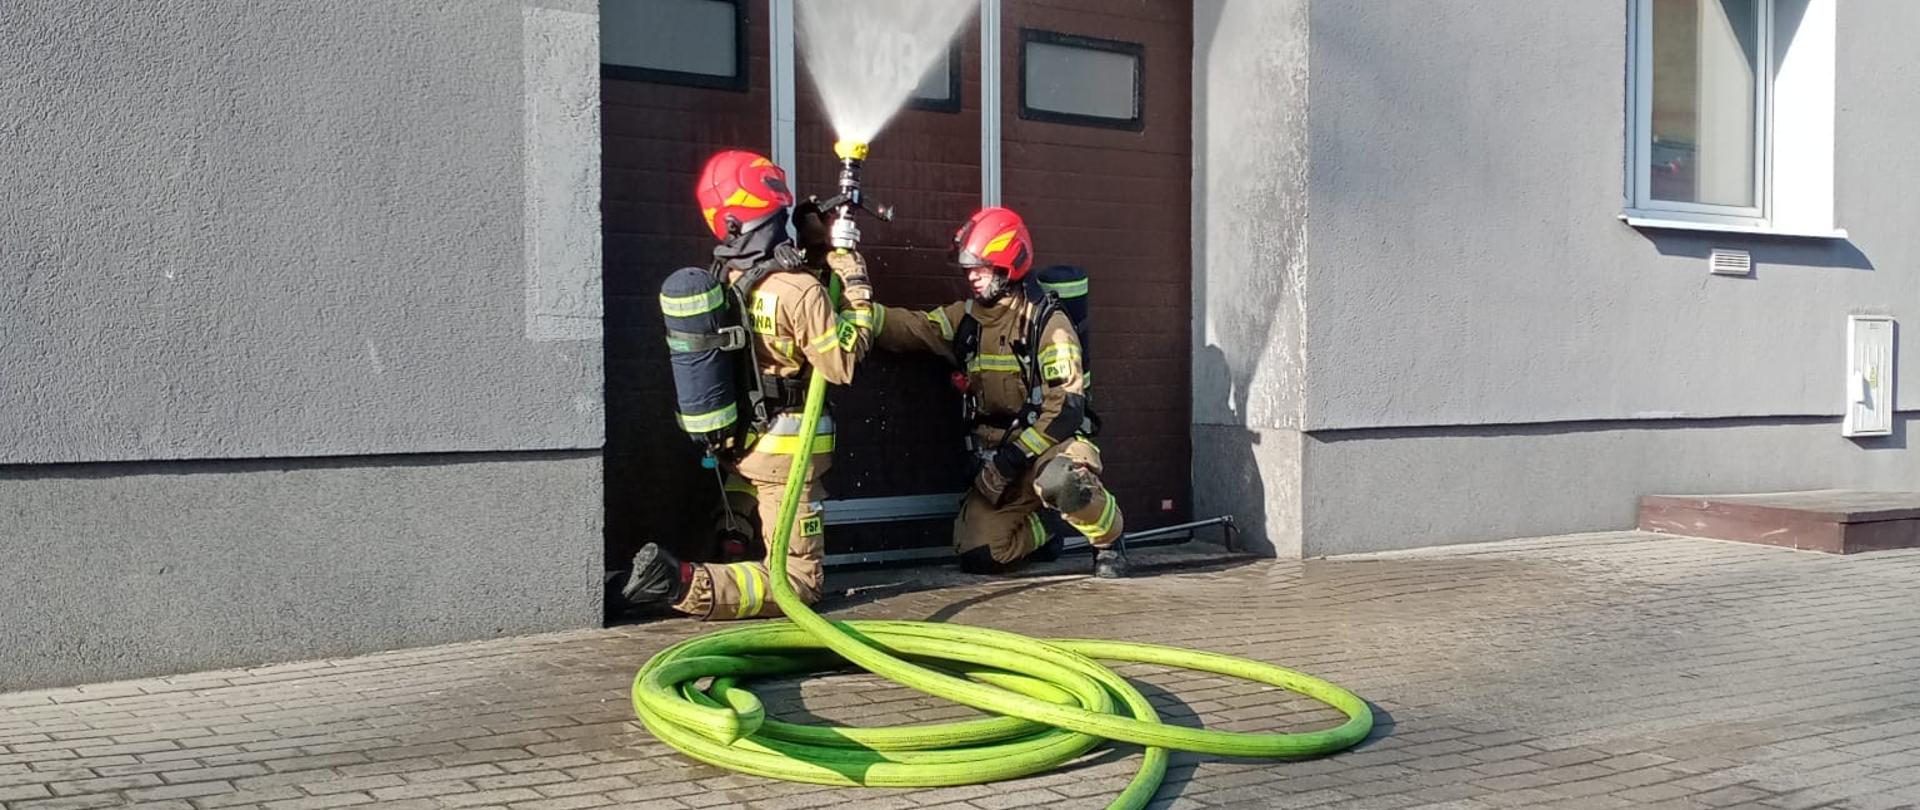 Przed wejściem do pomieszczenia garażowego, siedzi dwóch strażaków z zieloną linią wężową.